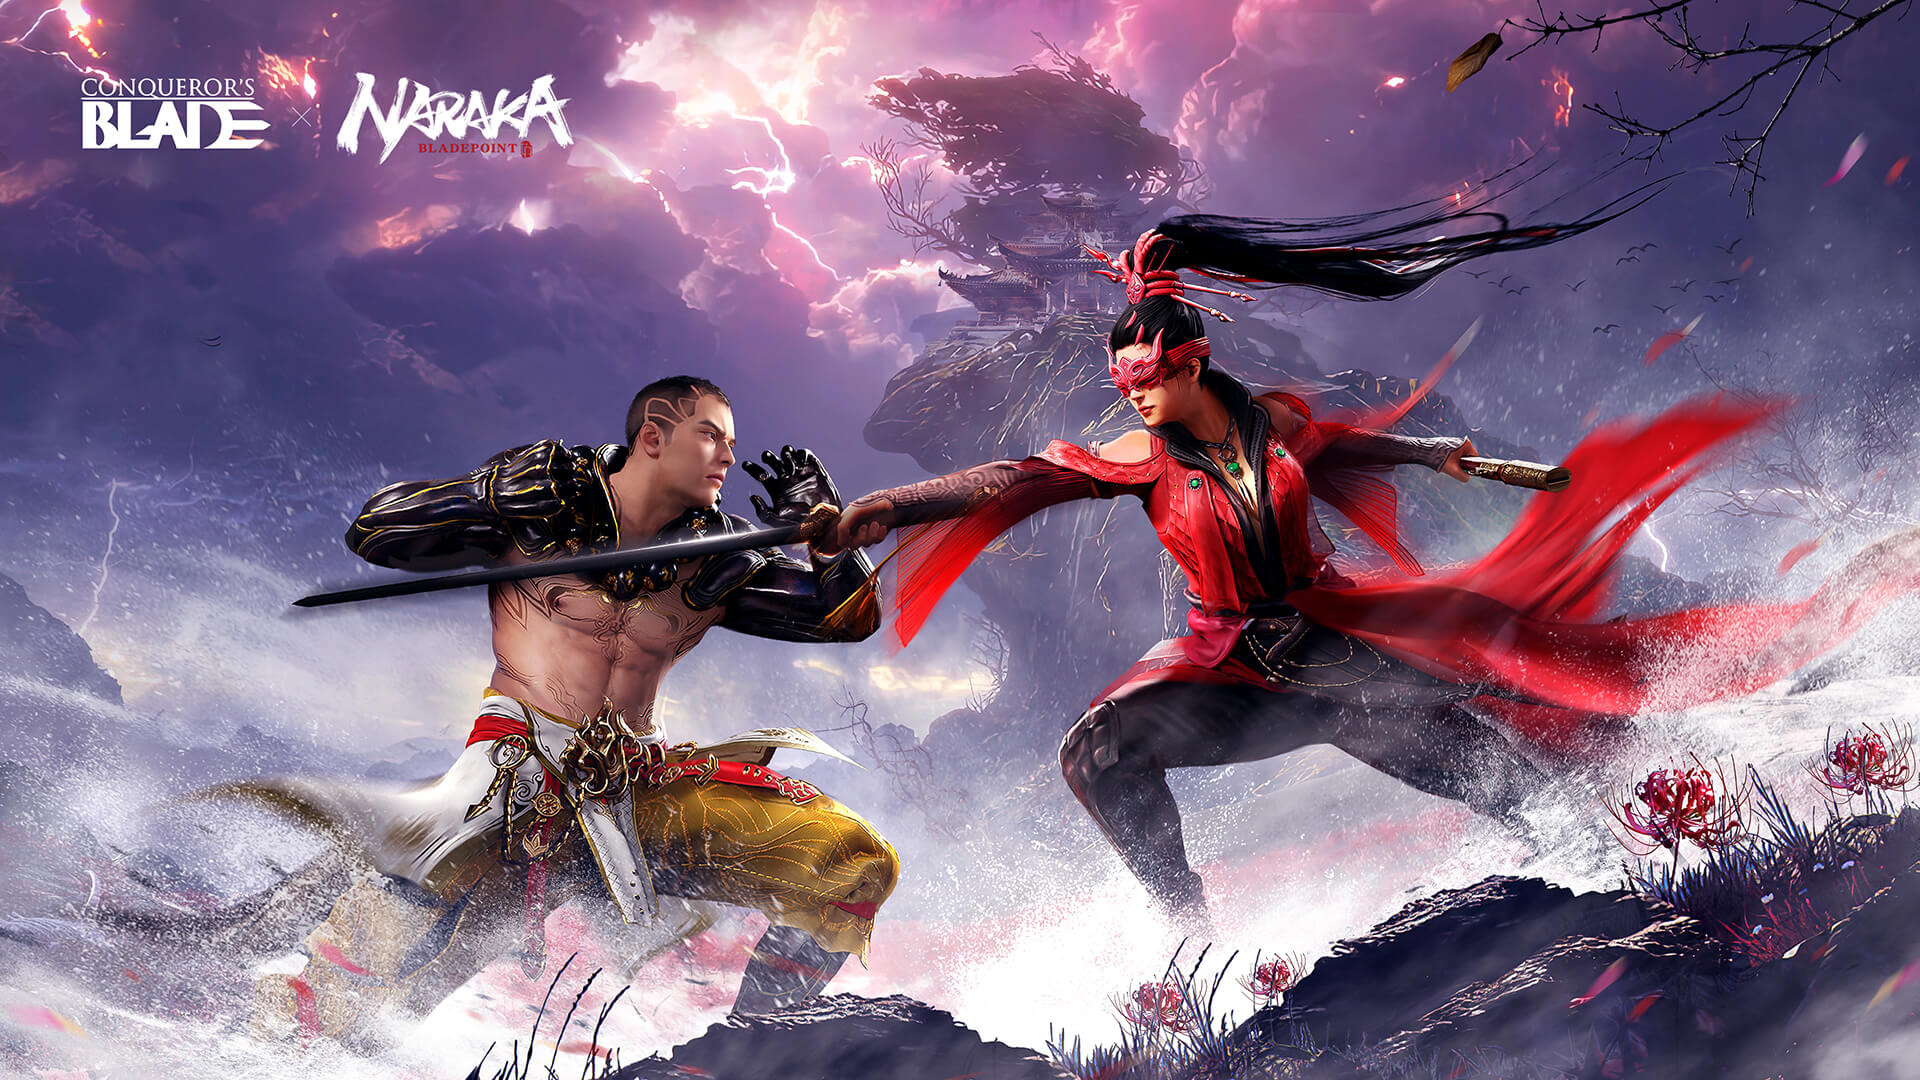 图片展示两位装扮古风的游戏角色正准备对战，背景是戏剧性的天空和飘扬的红色布帛。